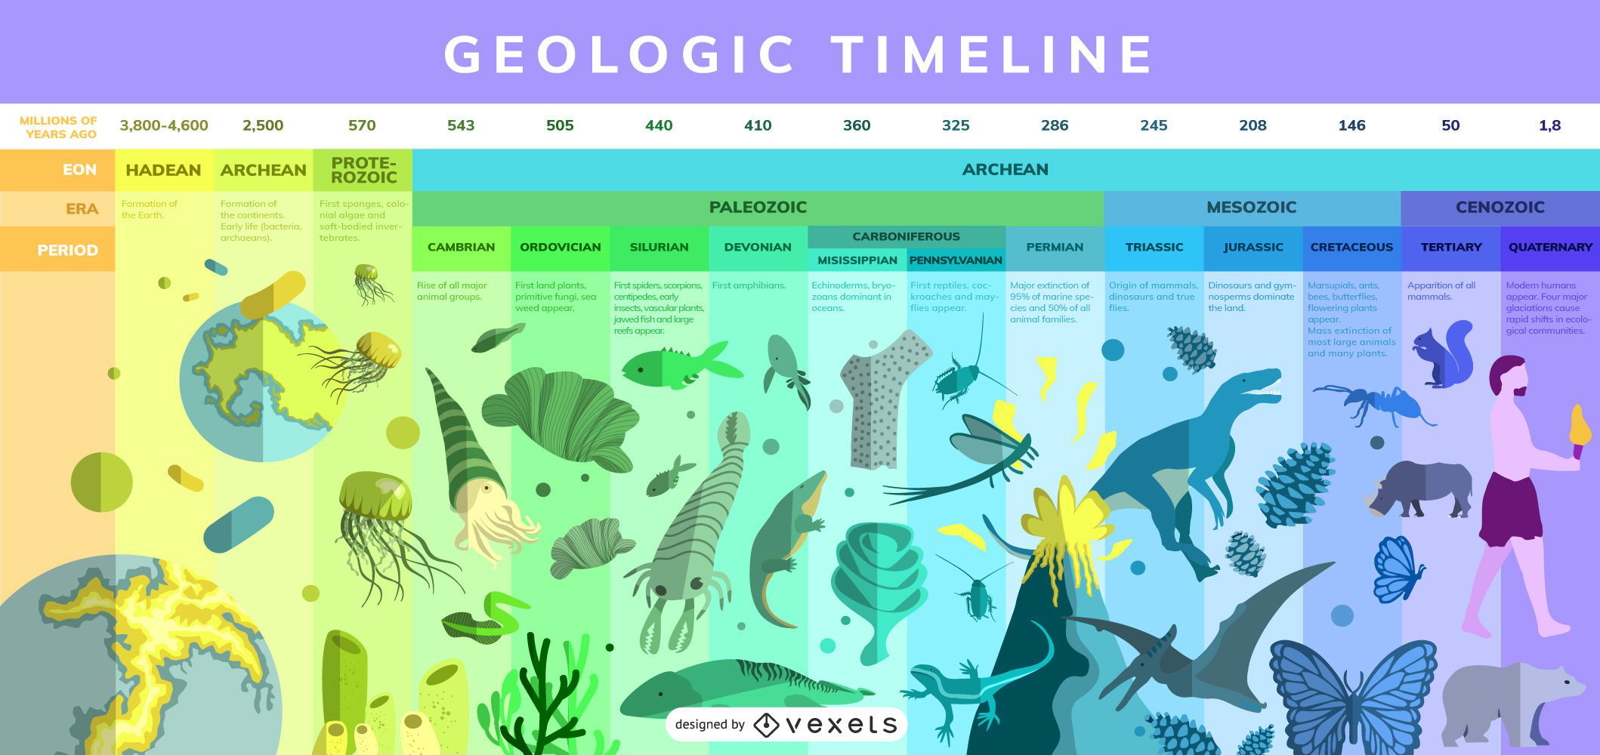 Linea Del Tiempo De La Era Geologica Linea Del Tiempo De Las Eras